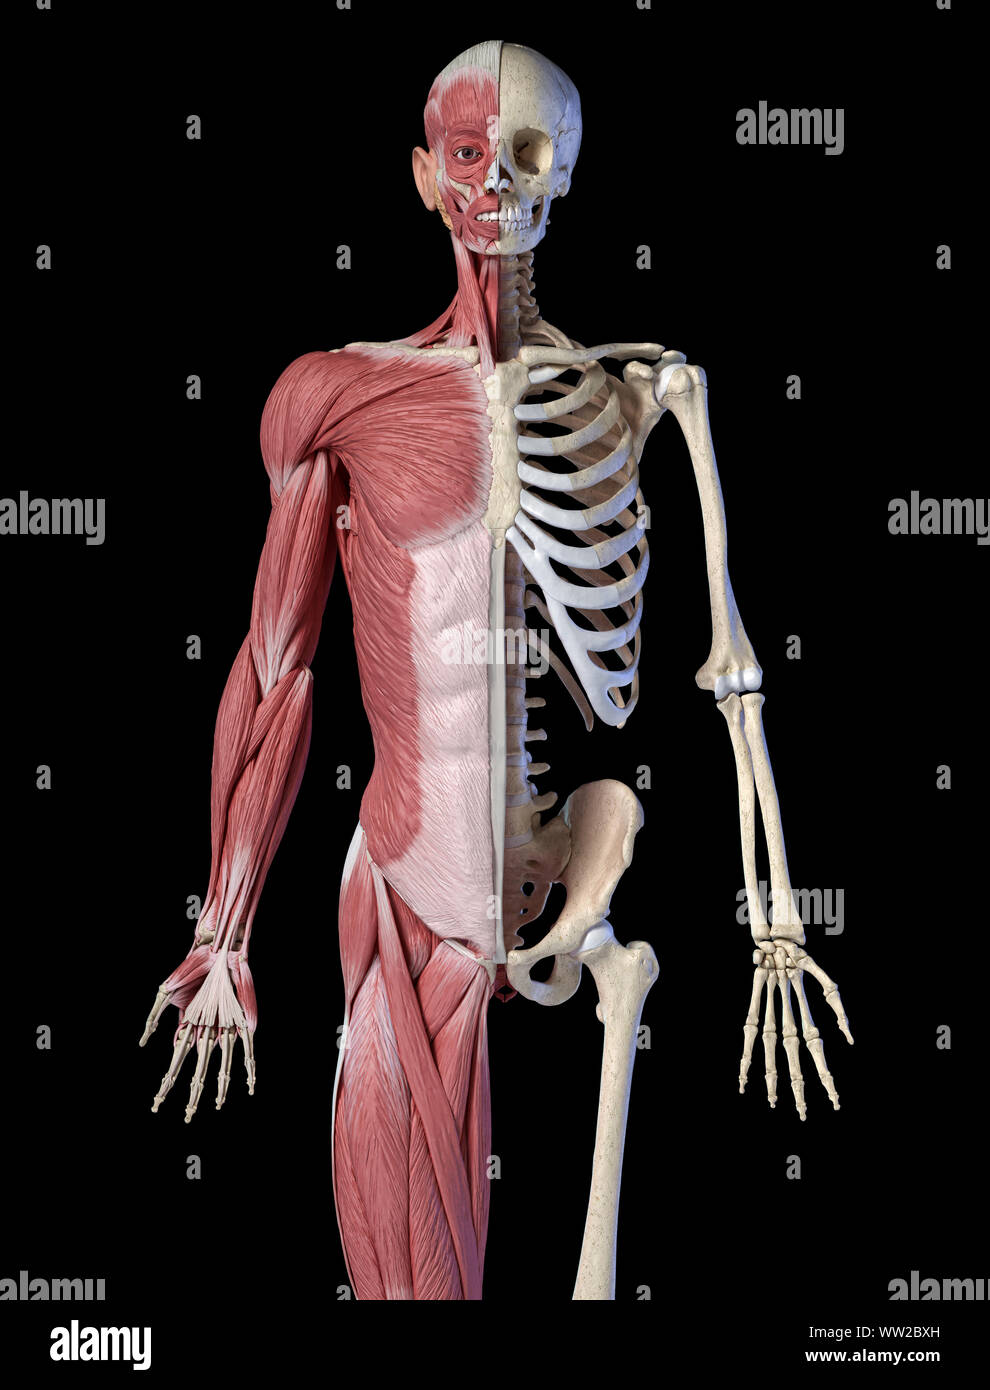 Die männliche Anatomie, 3/4 Abbildung Muskel- und Skeletterkrankungen Systeme, Vorderansicht auf schwarzen Hintergrund. 3D-Anatomie Illustration. Stockfoto